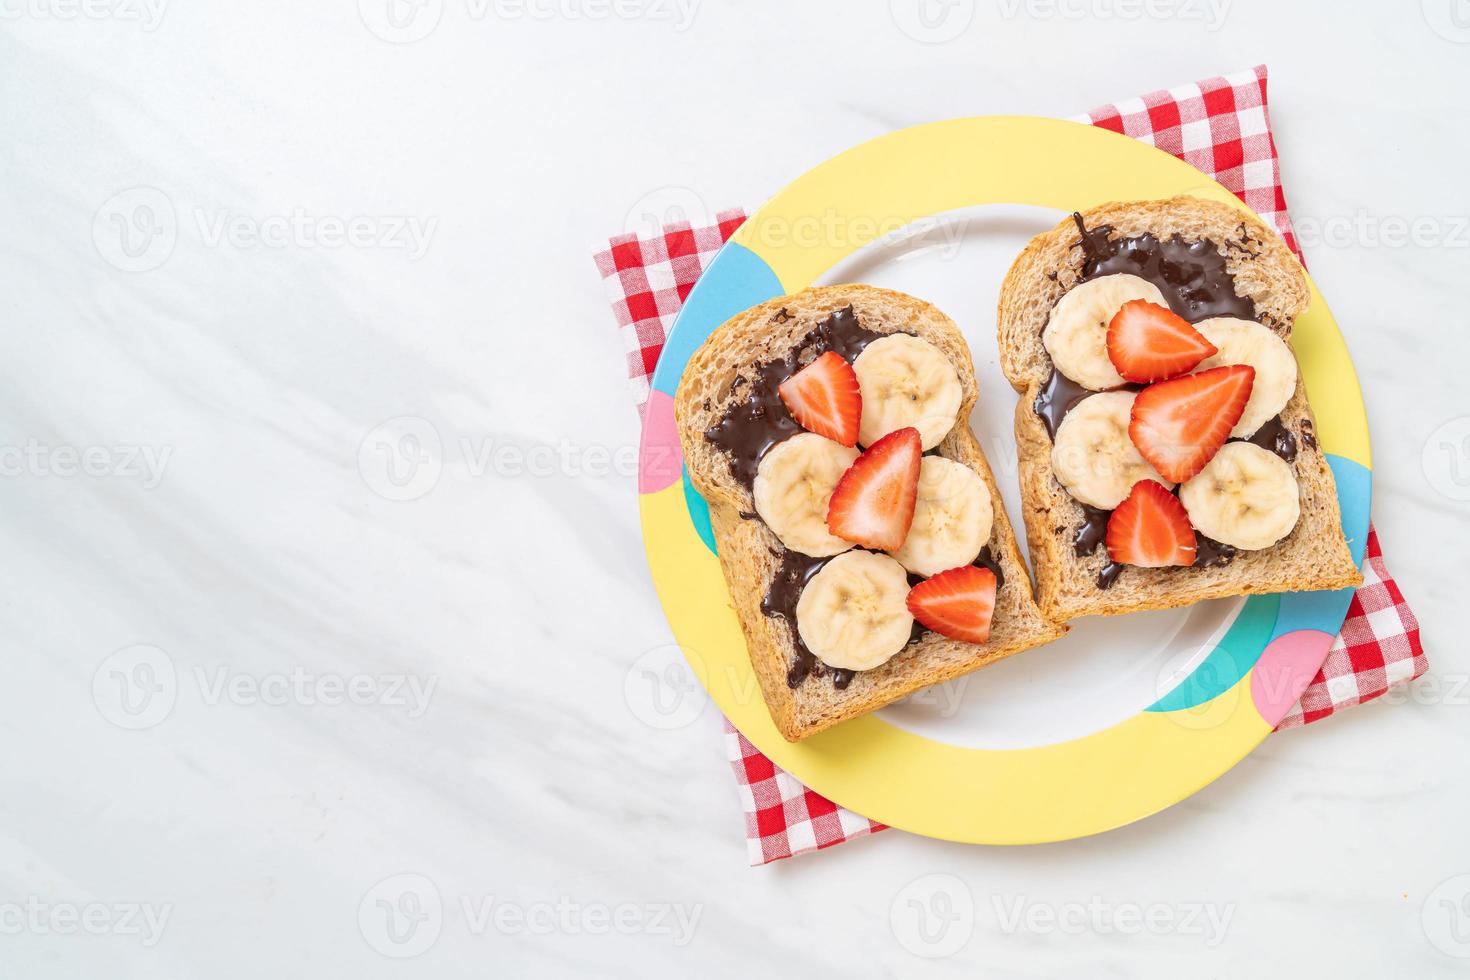 volkorenbrood geroosterd met verse banaan, aardbei en chocolade als ontbijt foto